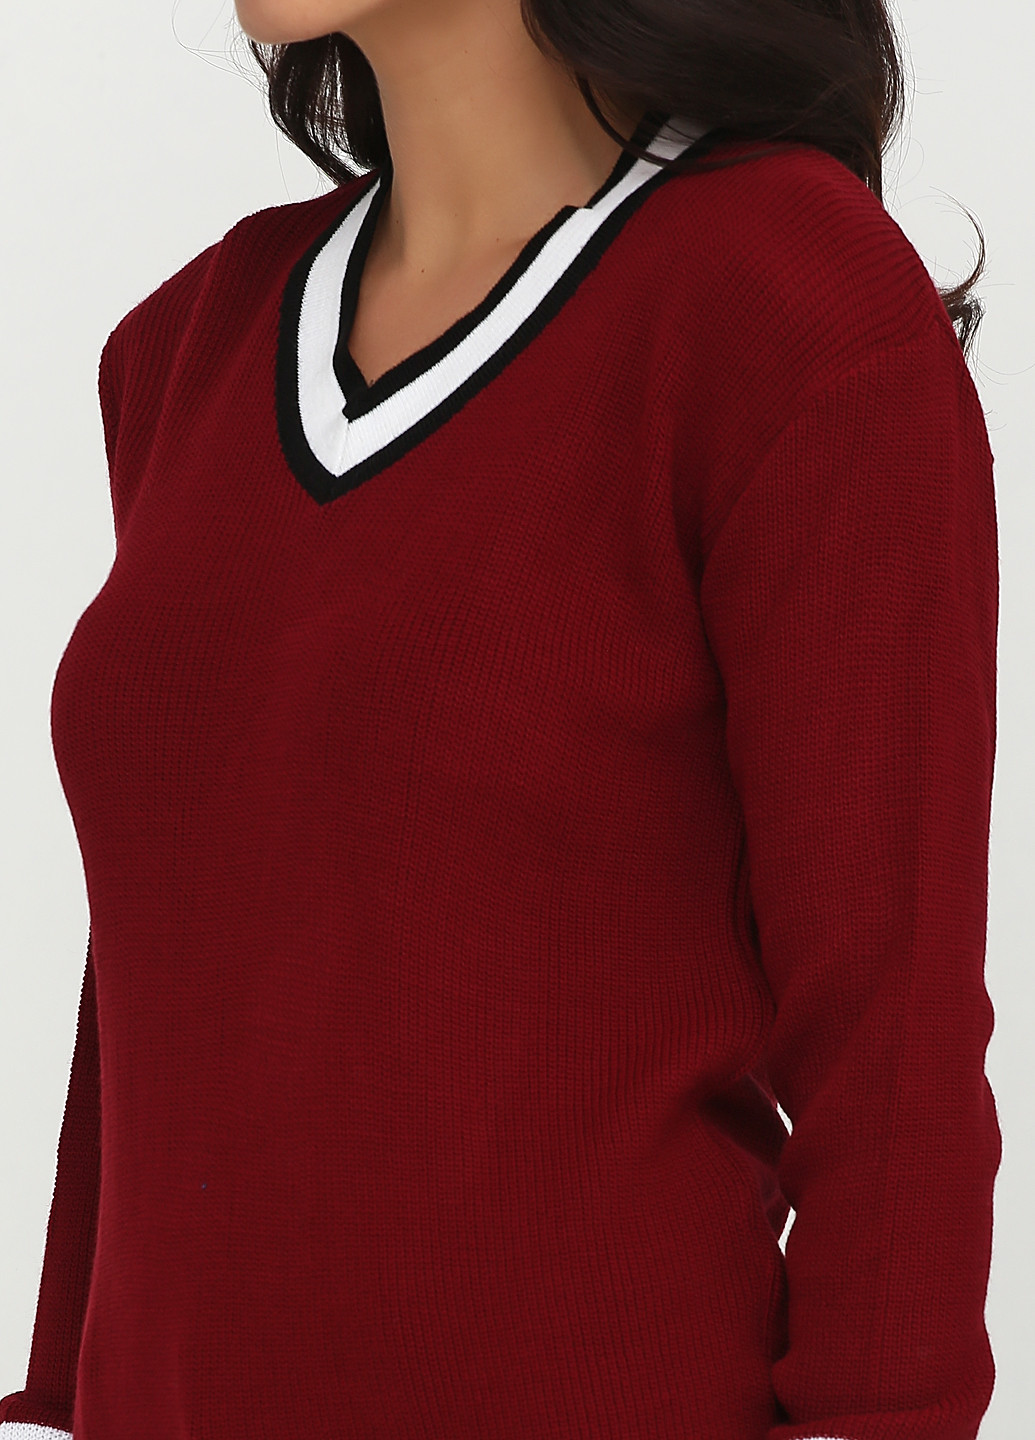 Бордовый демисезонный пуловер пуловер Babylon